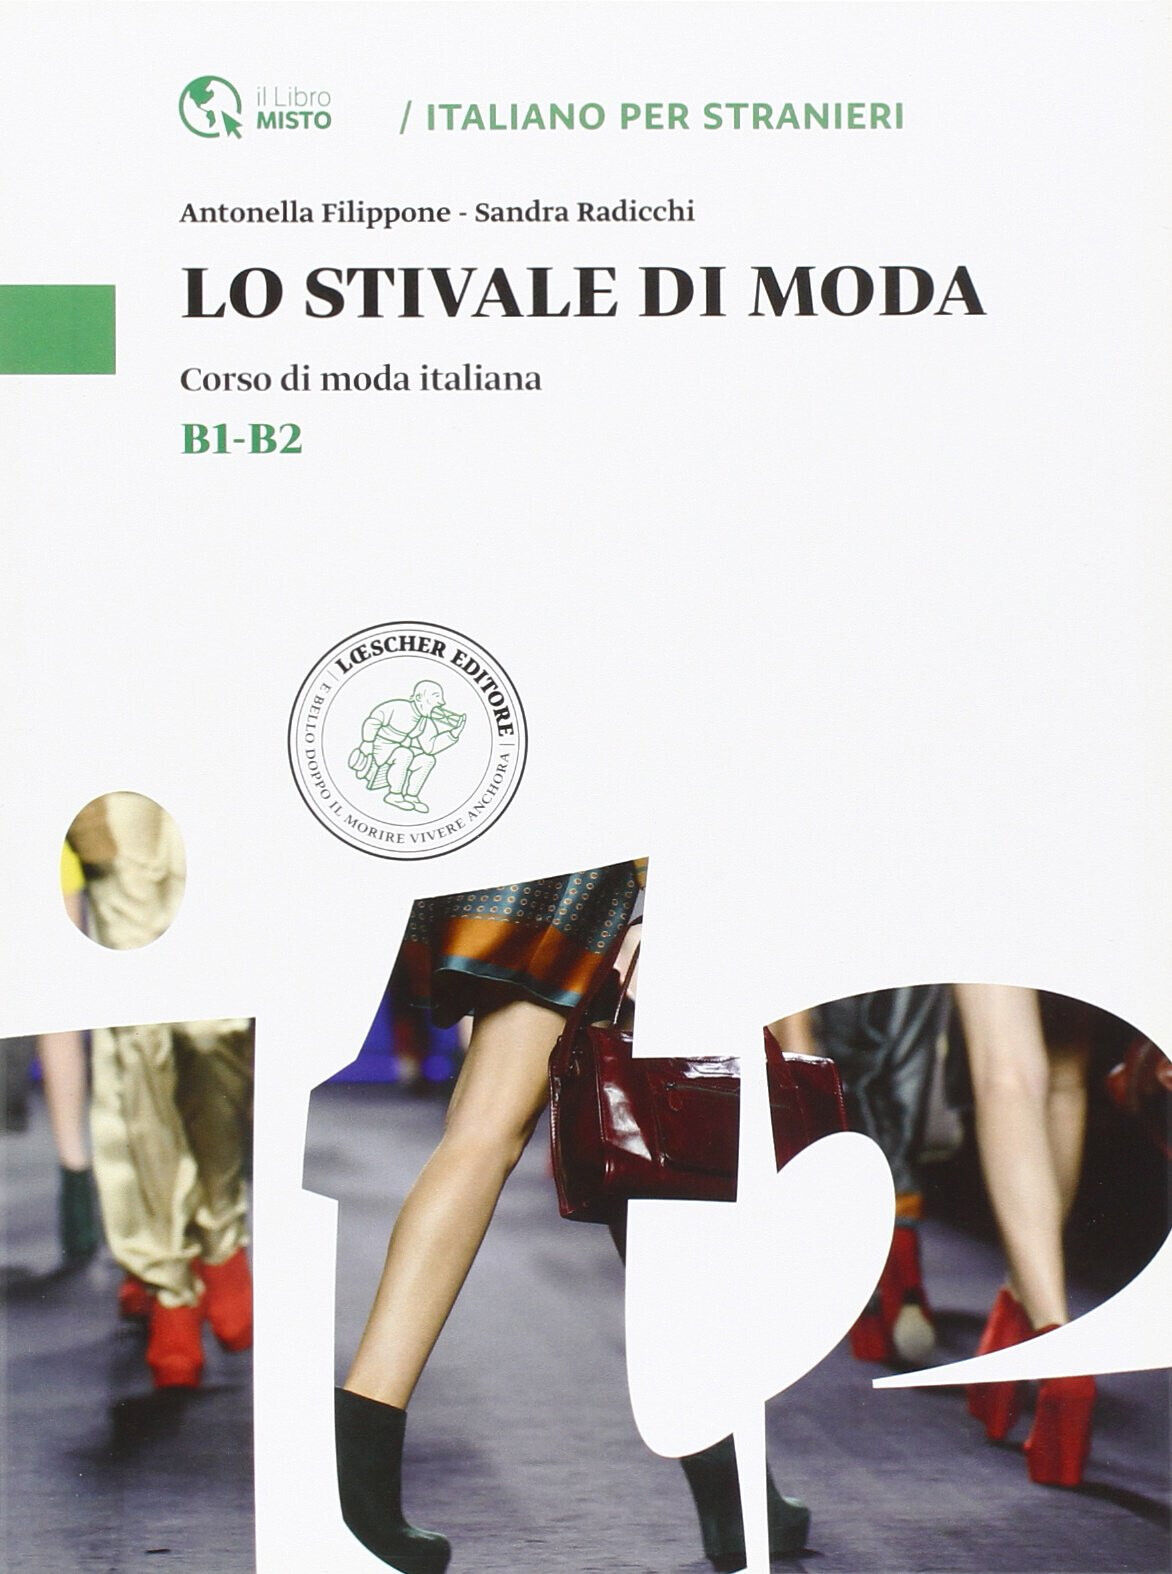 Lo stivale di moda - Antonella Filippone, Sandra Radicchi - Loescher, 2014